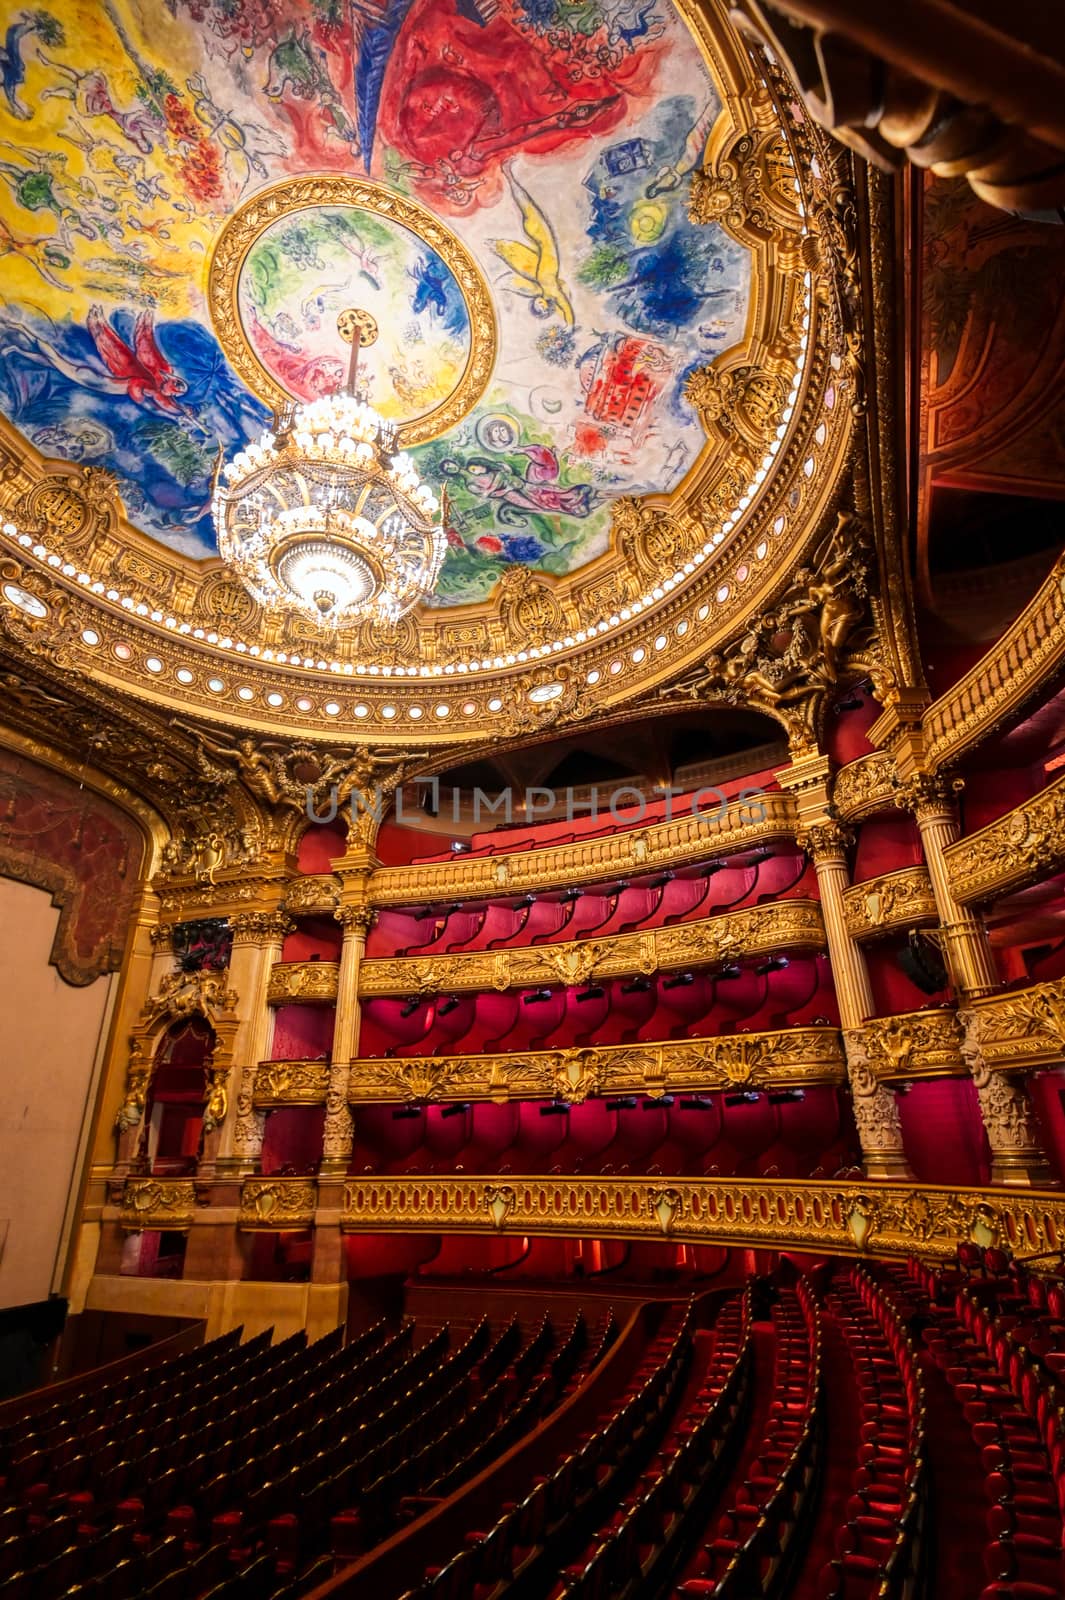 Palais Garnier in Paris, France by jbyard22